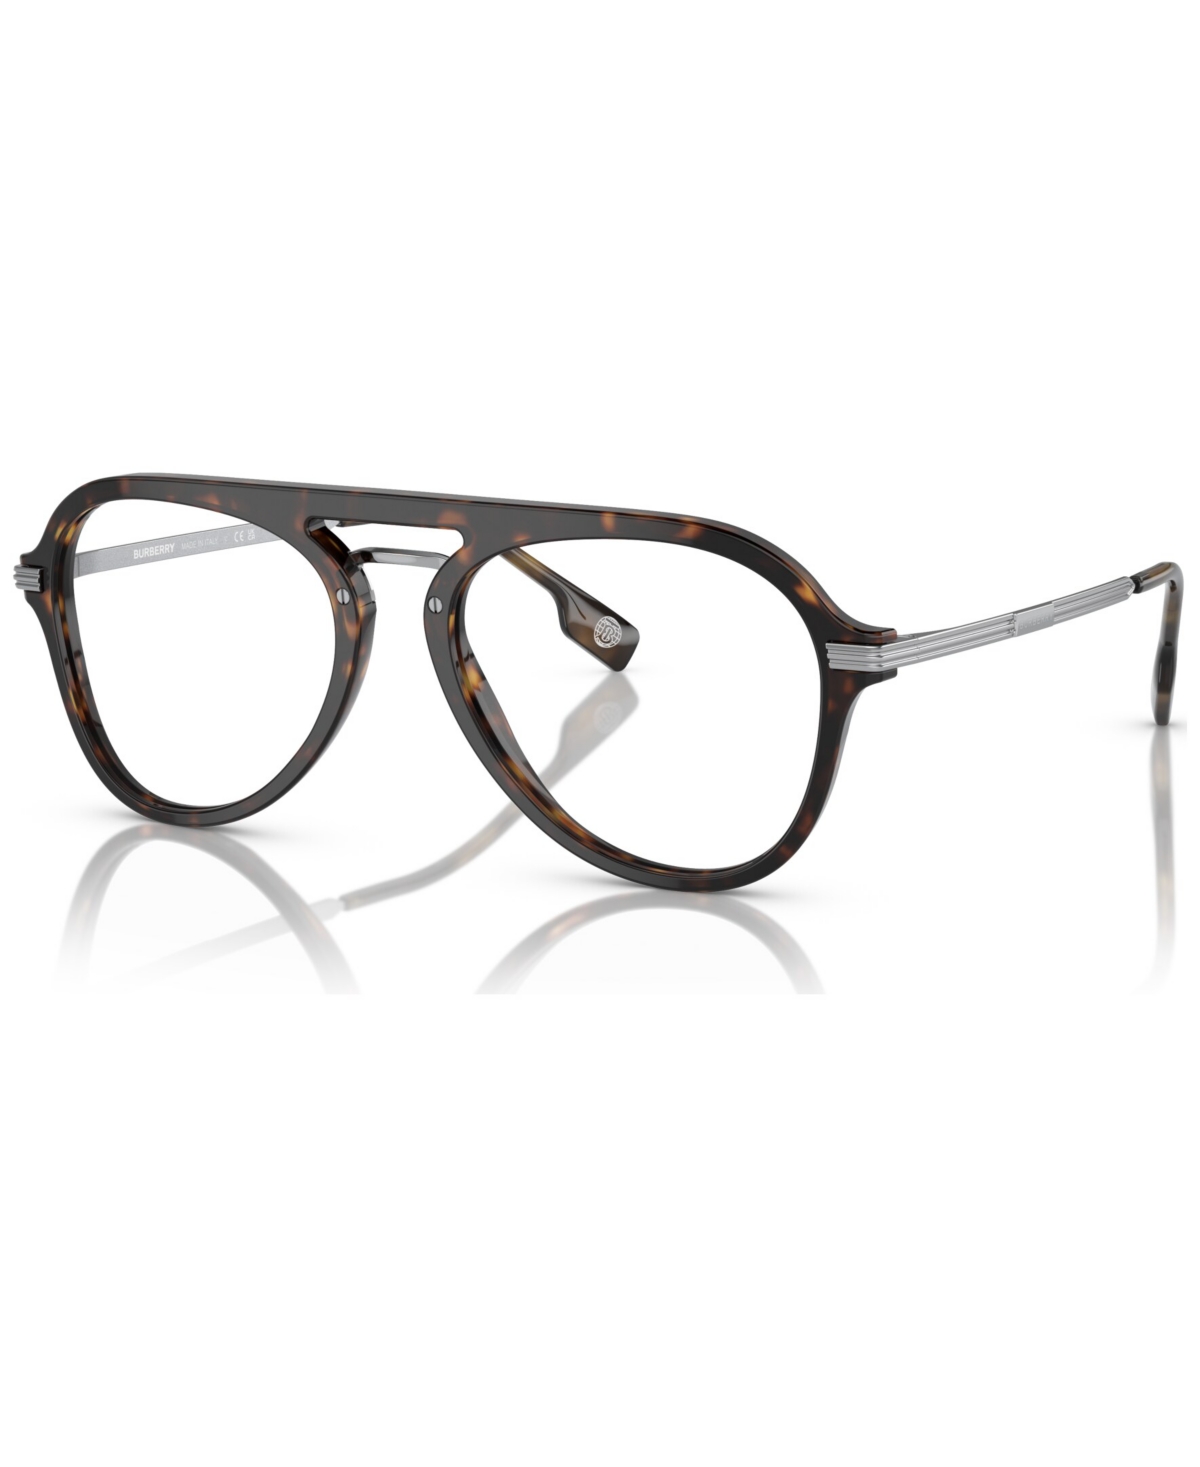 Men's Pilot Eyeglasses, BE2377 53 - Check Brown